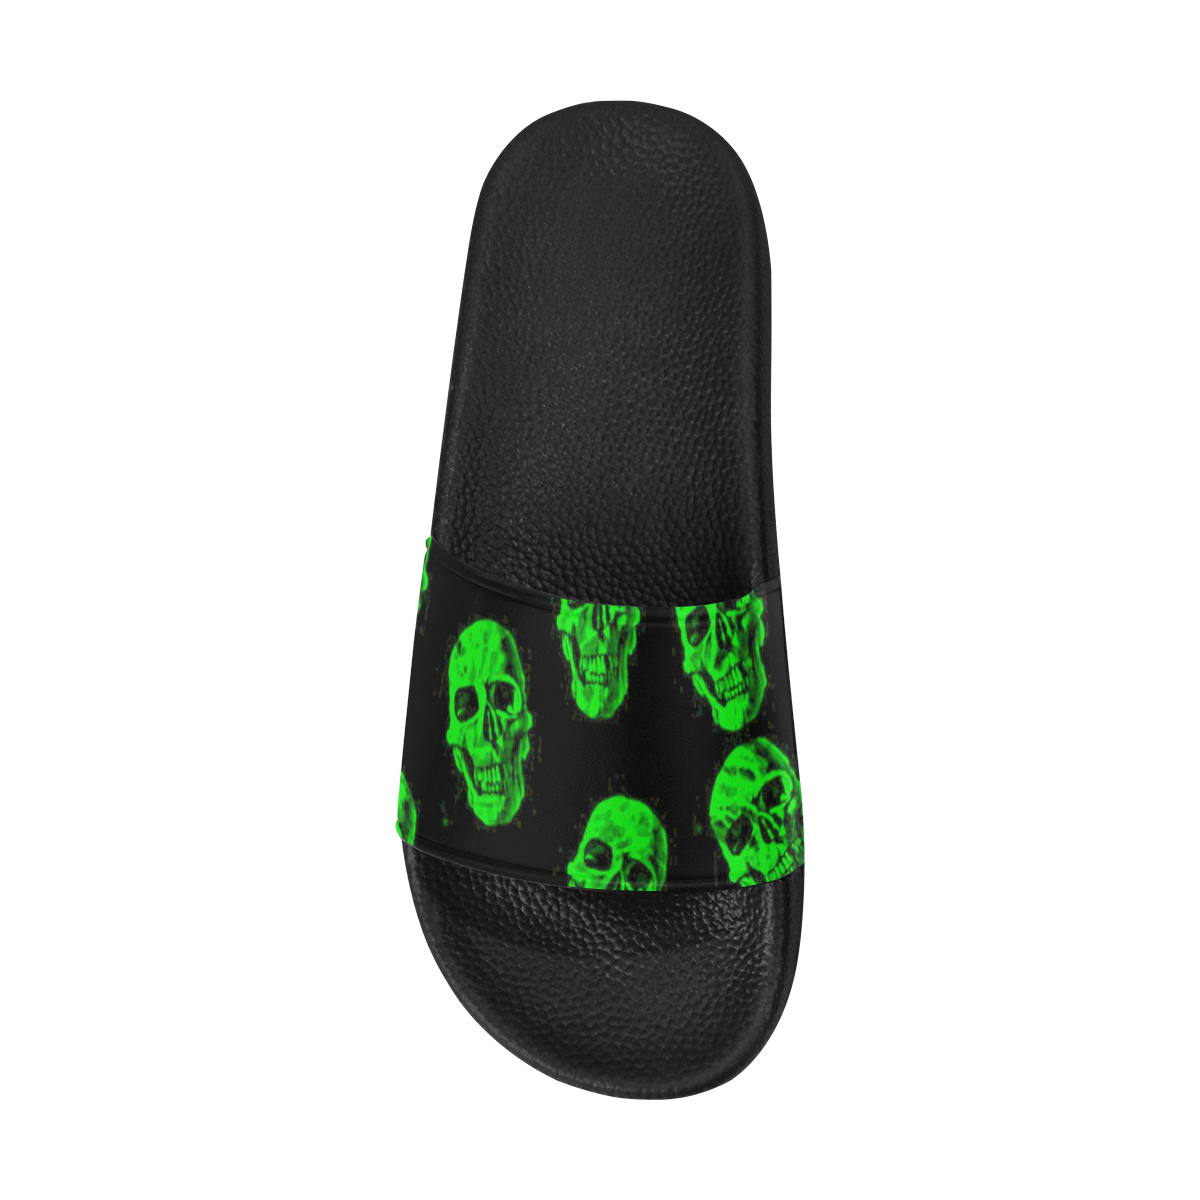 Hot Skulls, green by JamColors Men's Slide Sandals (Model 057)